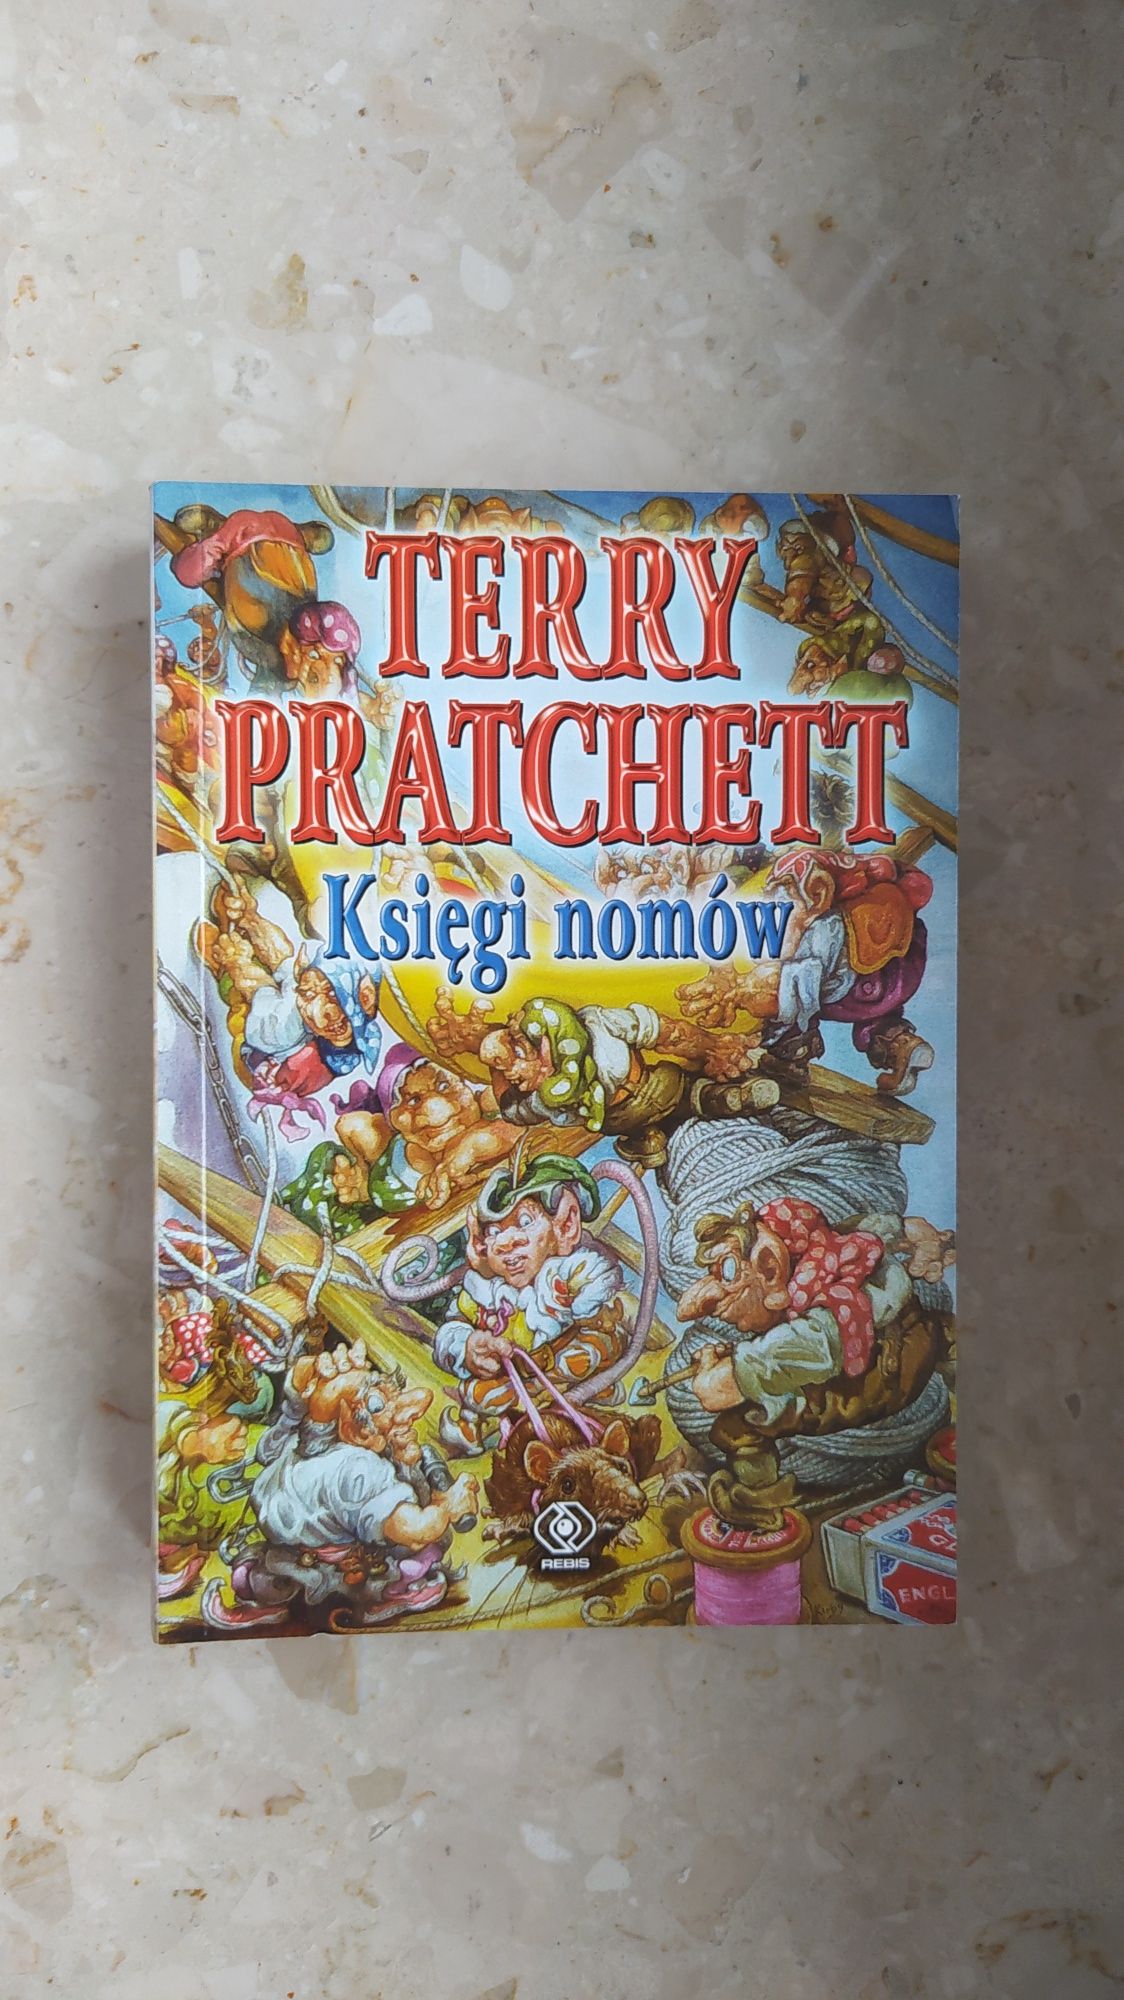 Terry Pratchett "Księgi nomów"